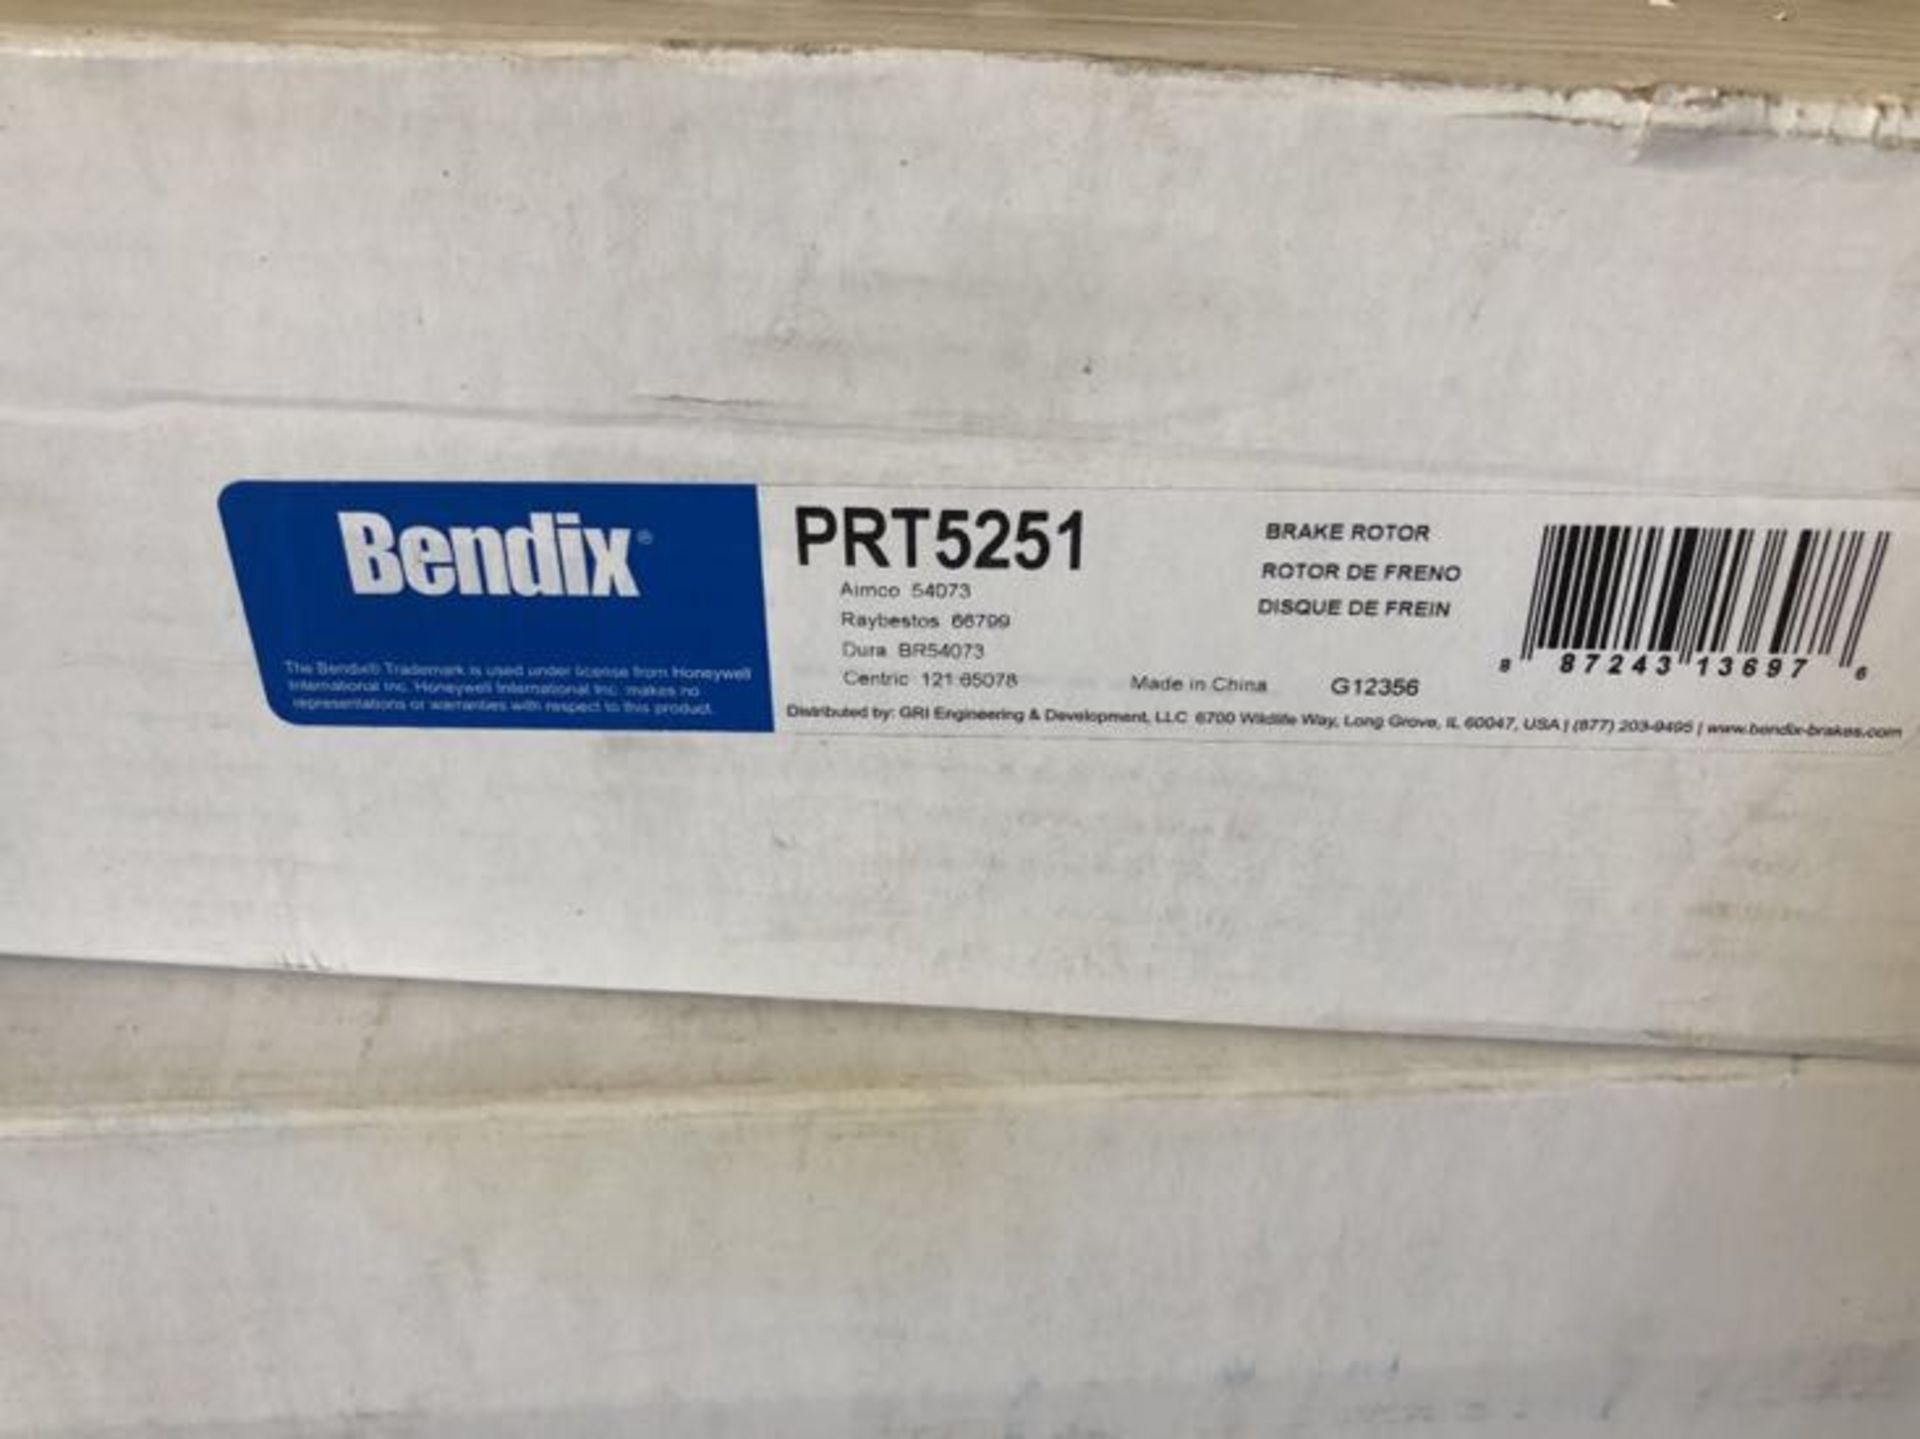 LOT OF (APPROX. 23) BENDIX PRT5251 BRAKE ROTORS - Image 2 of 2